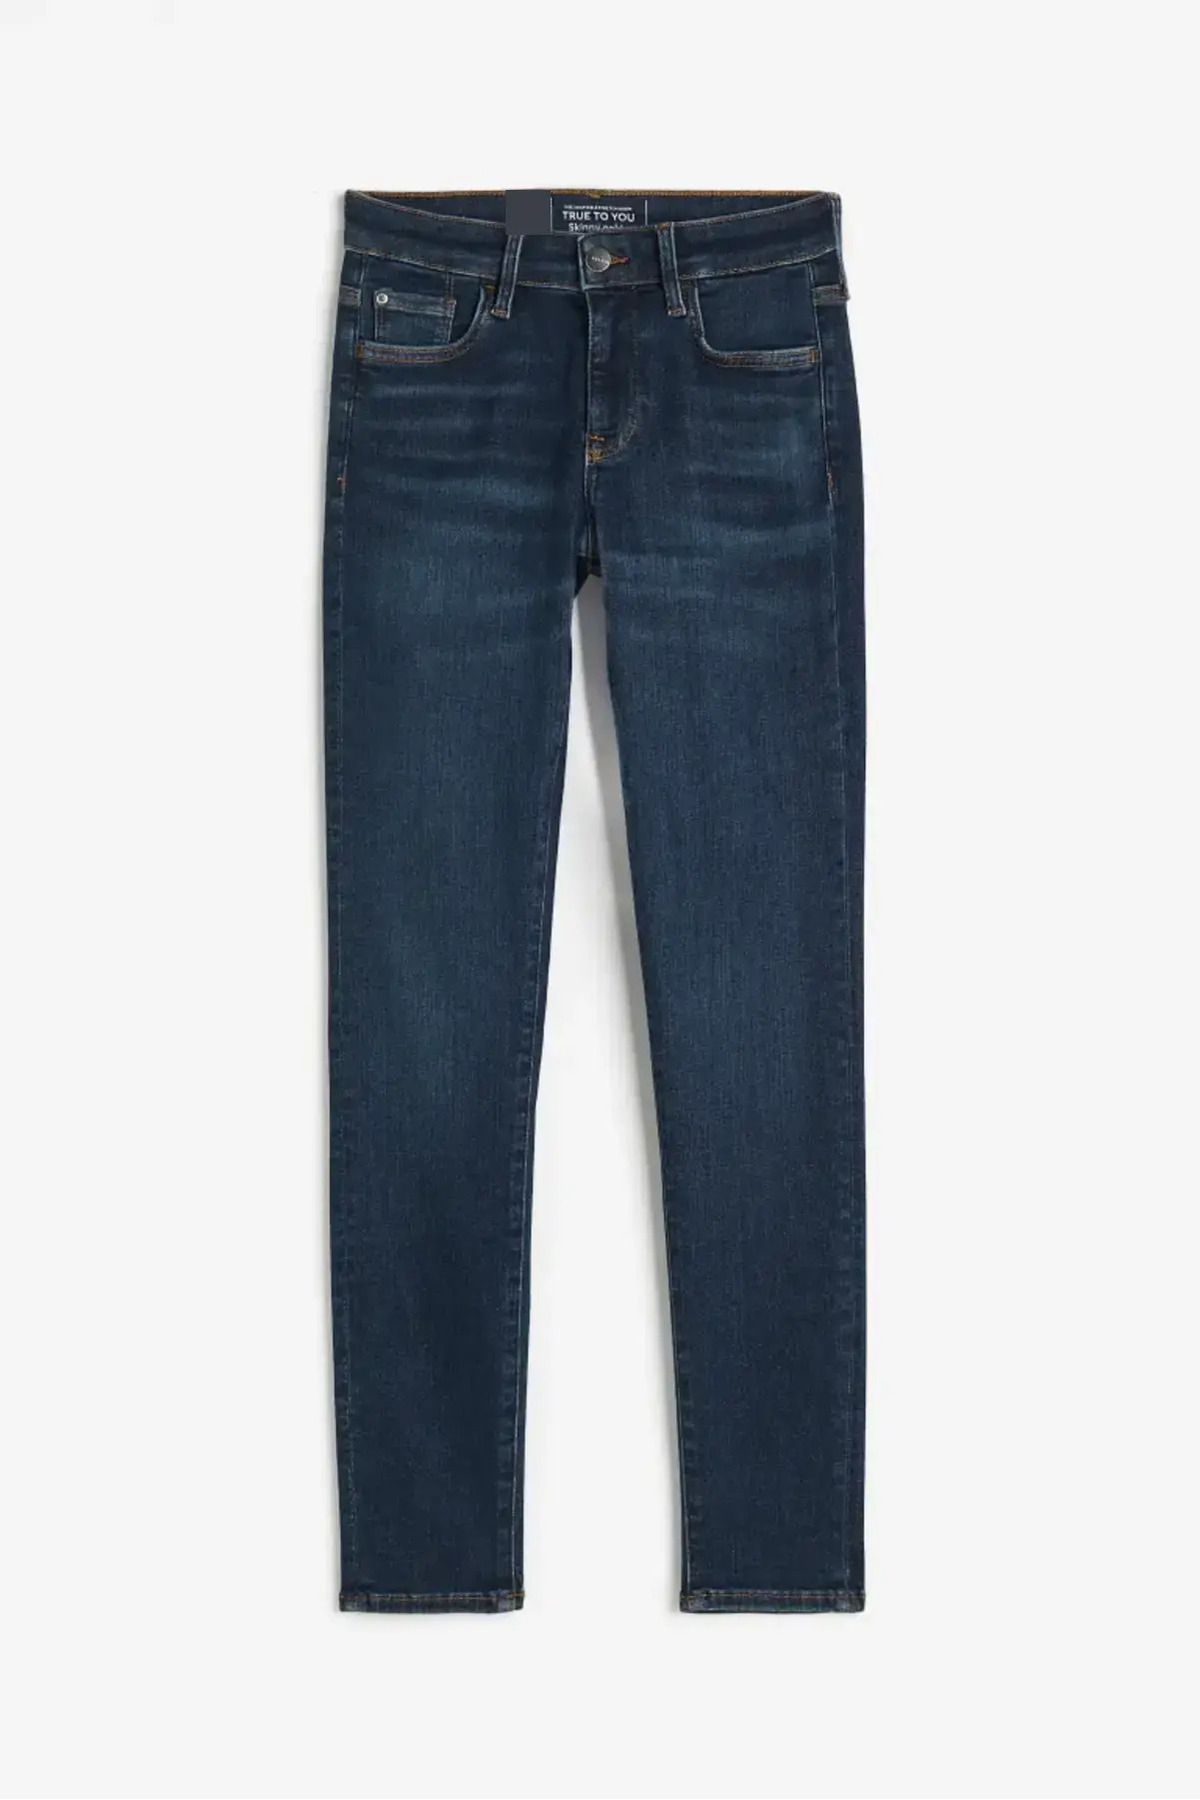 For Big Trend Kadın Yüksek Bel Strech Dar Paça Esnek Yıkamalı Jeans Pantolon